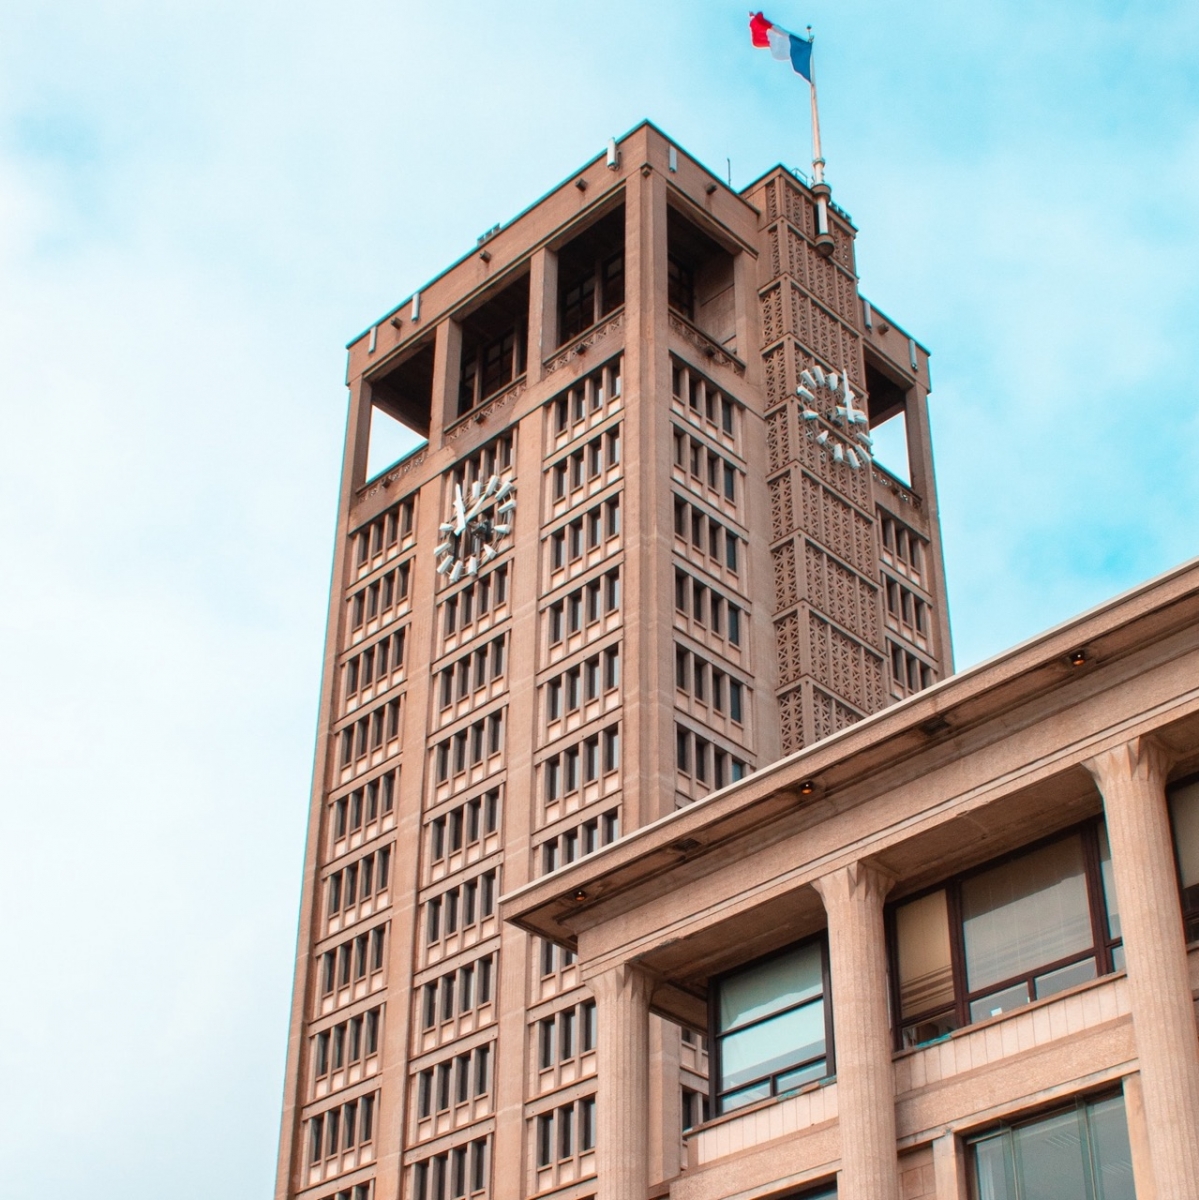 Enorme torre del ayuntamiento en le Havre